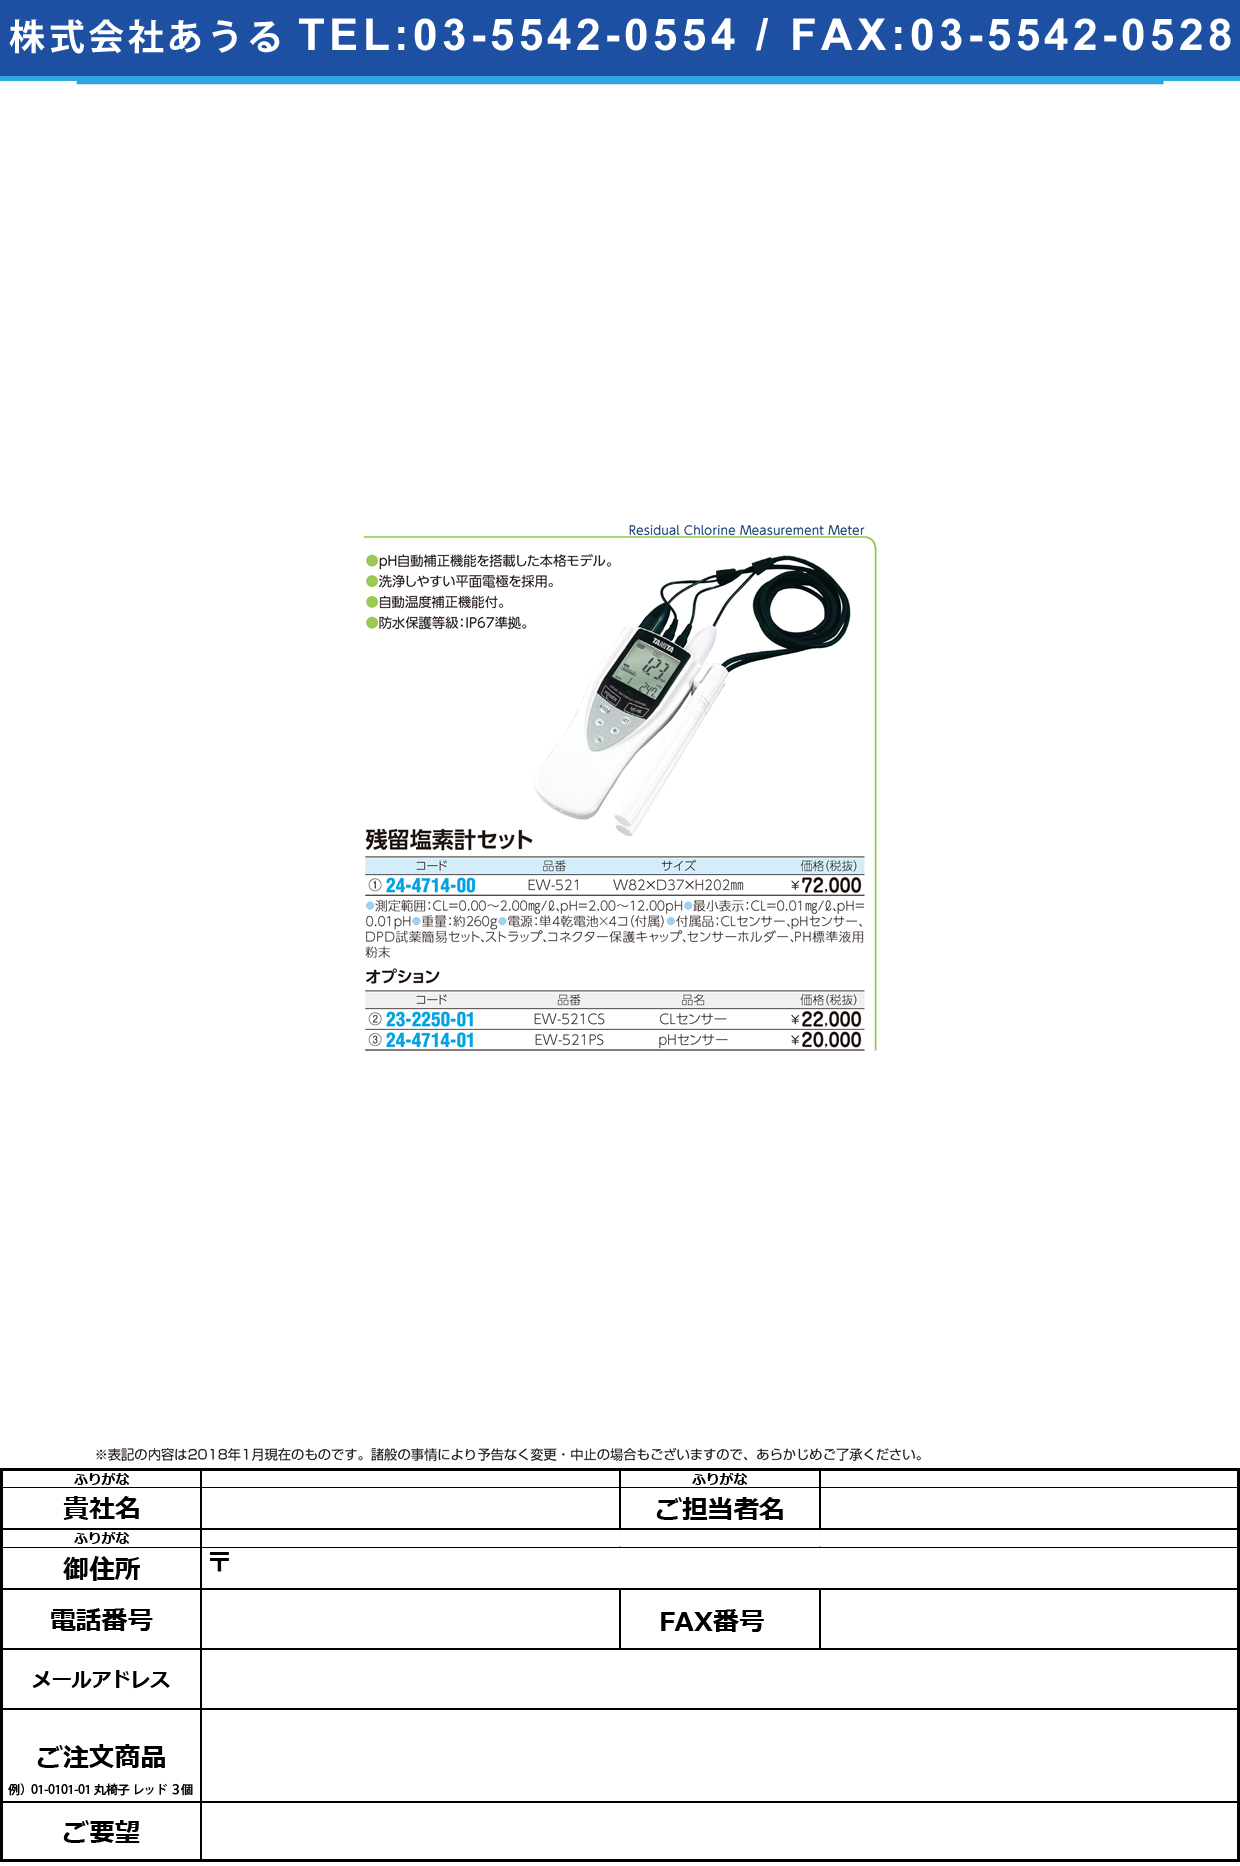 (24-4714-01)残留塩素計用ｐＨセンサー EW-521PS ｻﾞﾝﾘｭｳｴﾝｿﾖｳPHｾﾝｻｰ(タニタ)【1個単位】【2018年カタログ商品】